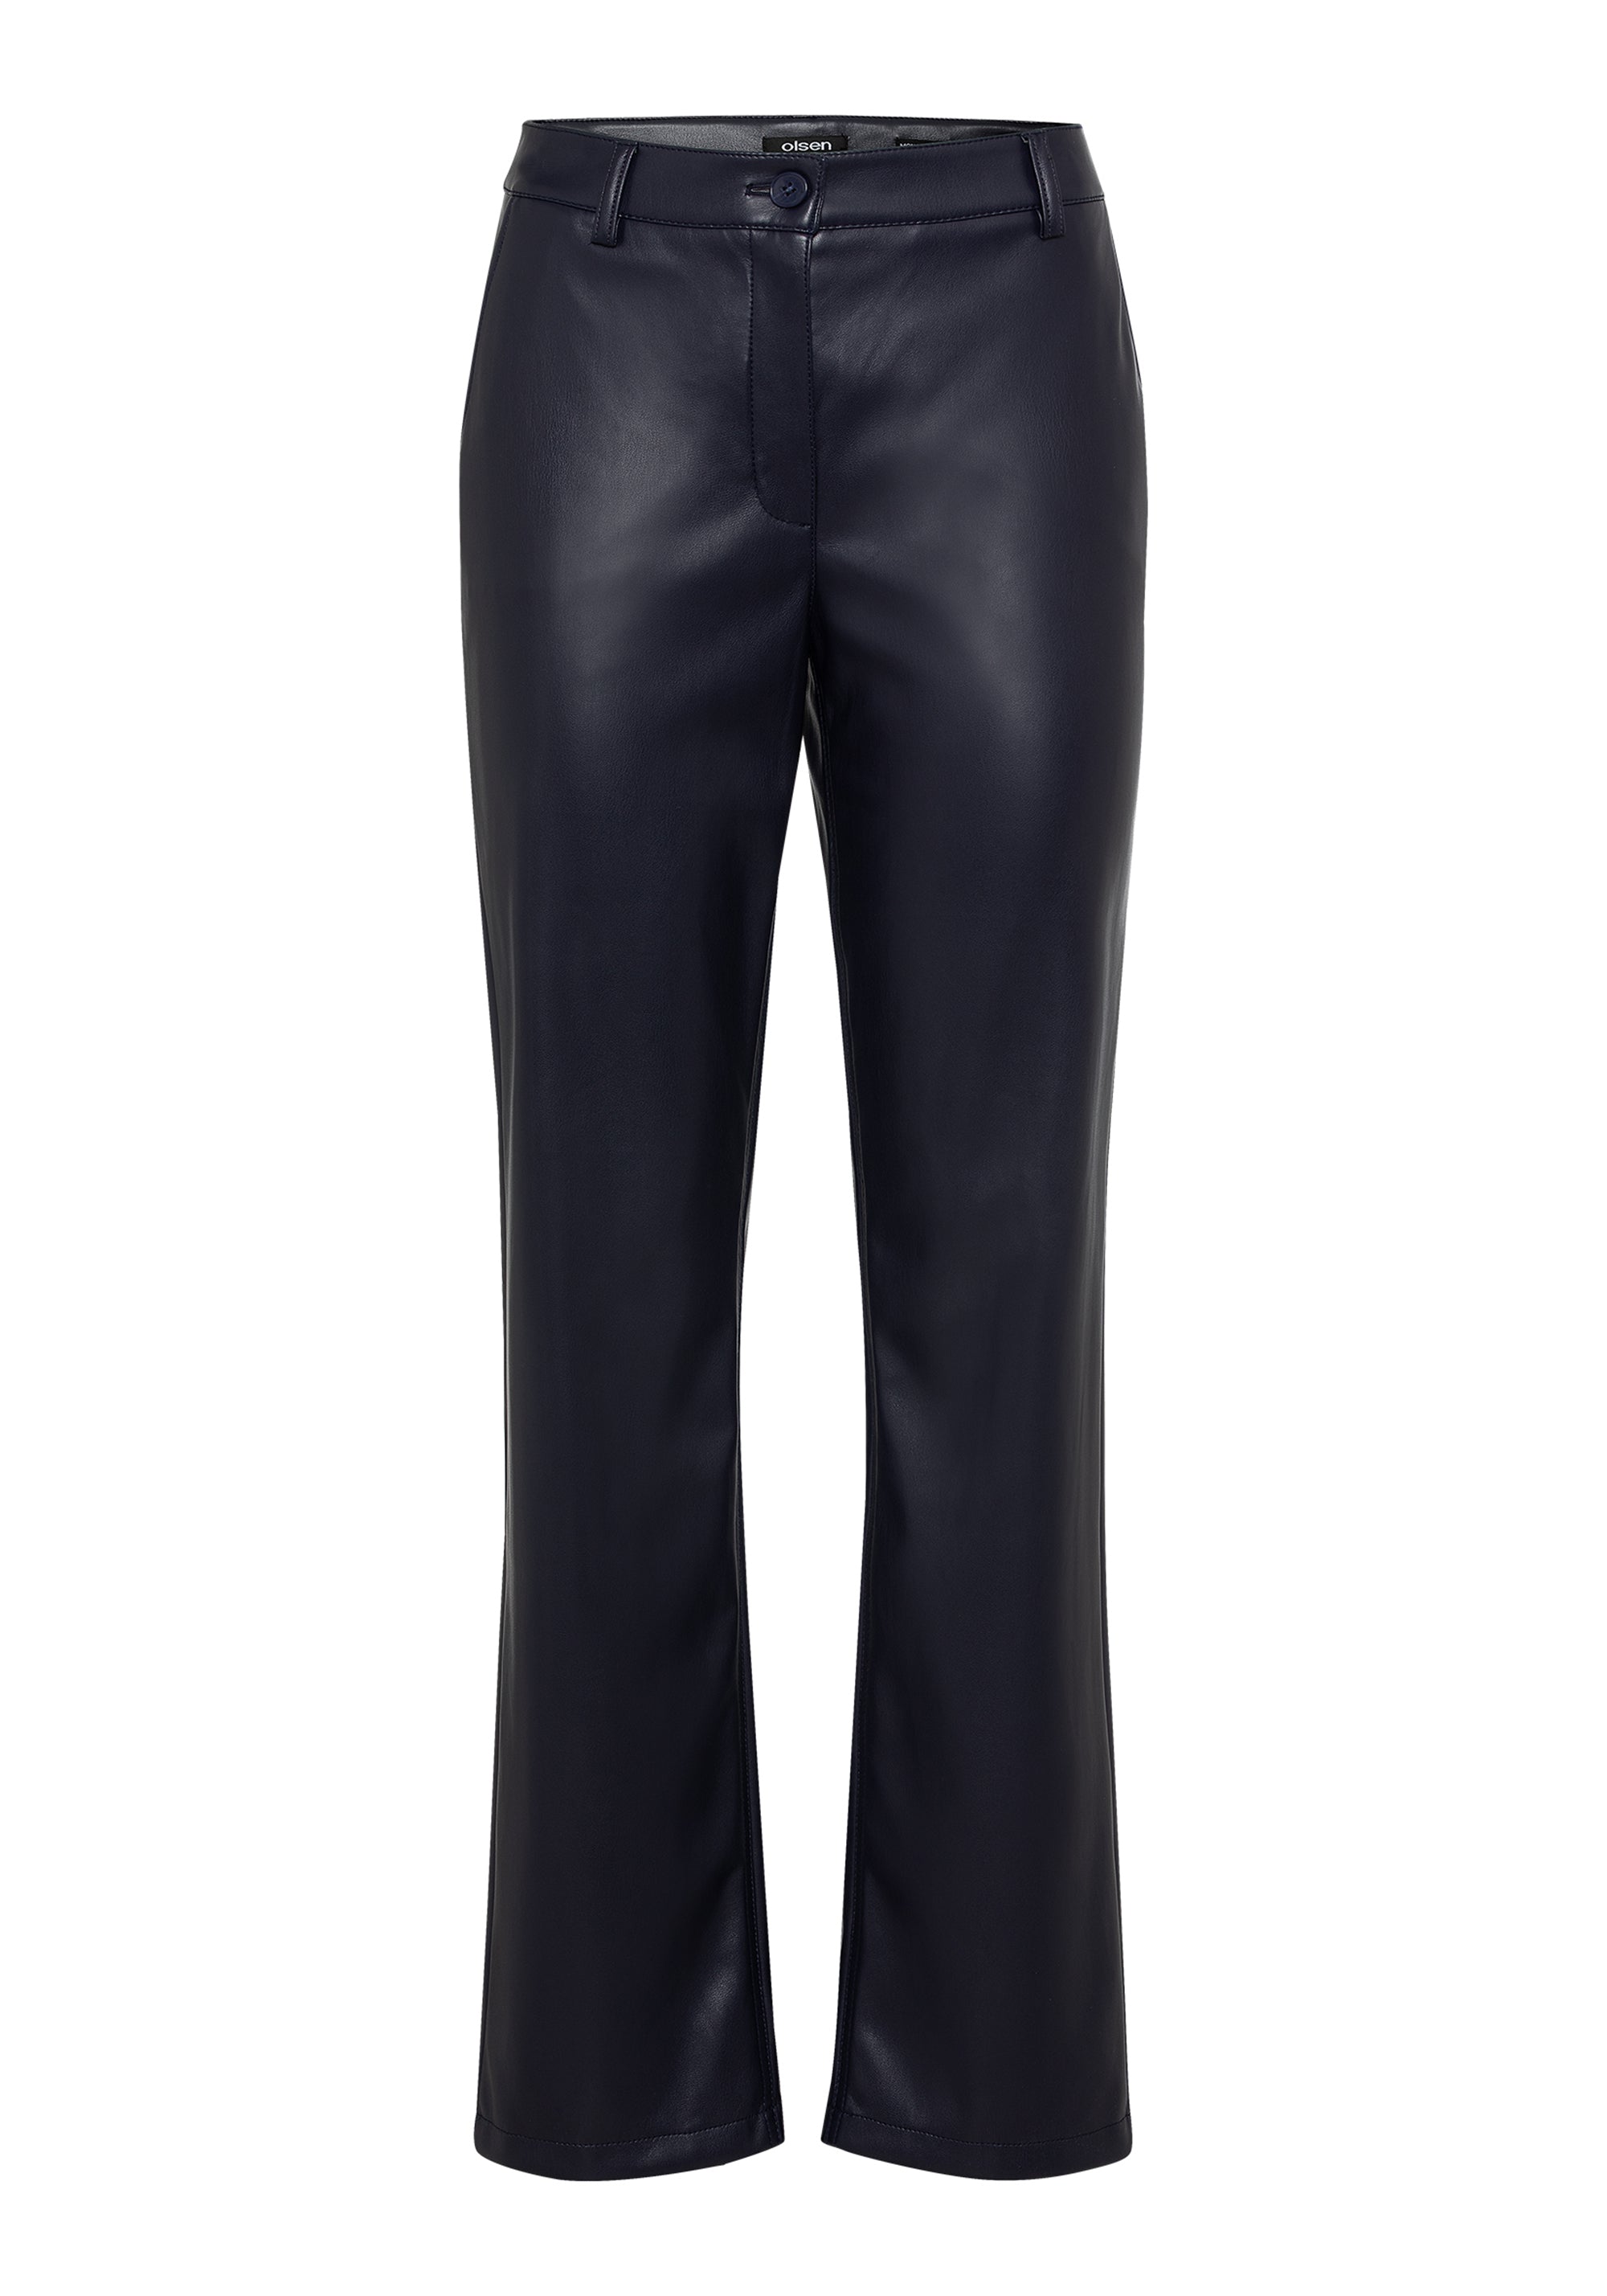 Empreinte Allure Trousers in Noir FINAL SALE (50% Off)